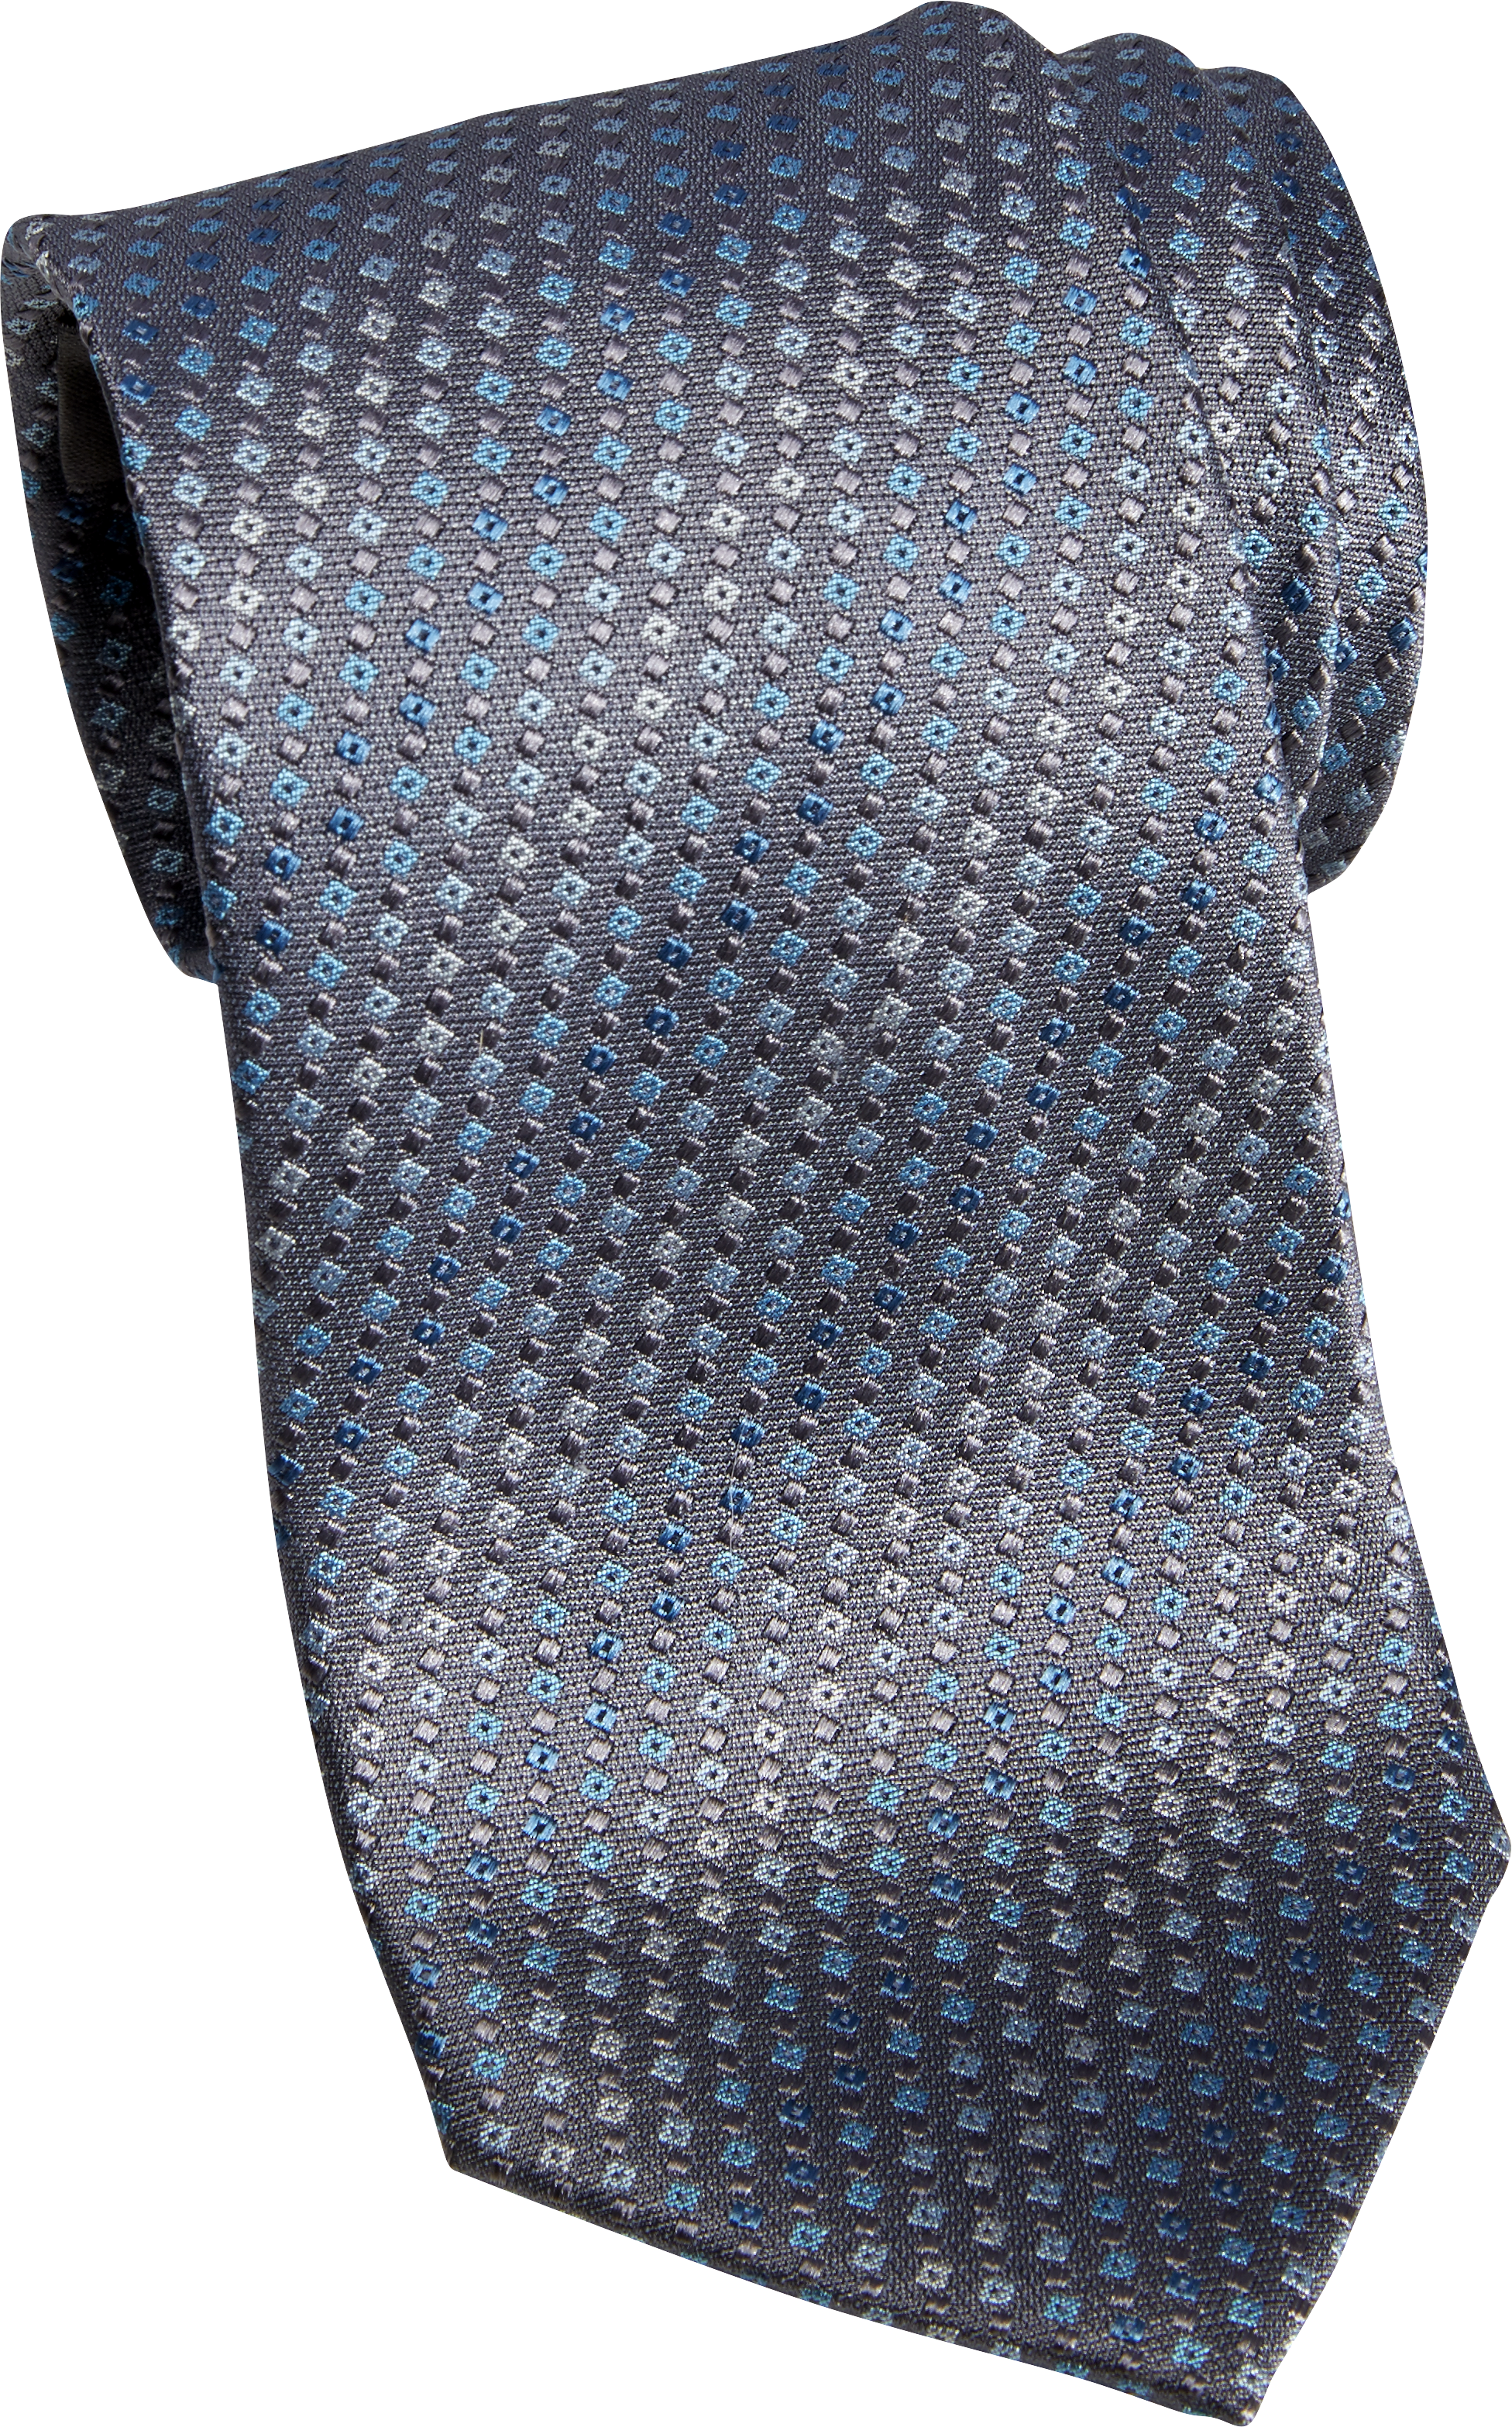 Áo cà vạt luôn là lựa chọn thời thượng cho những người đàn ông lịch lãm. Hãy để hình ảnh này giúp bạn tìm thêm cách mix và match cho phong cách của mình.